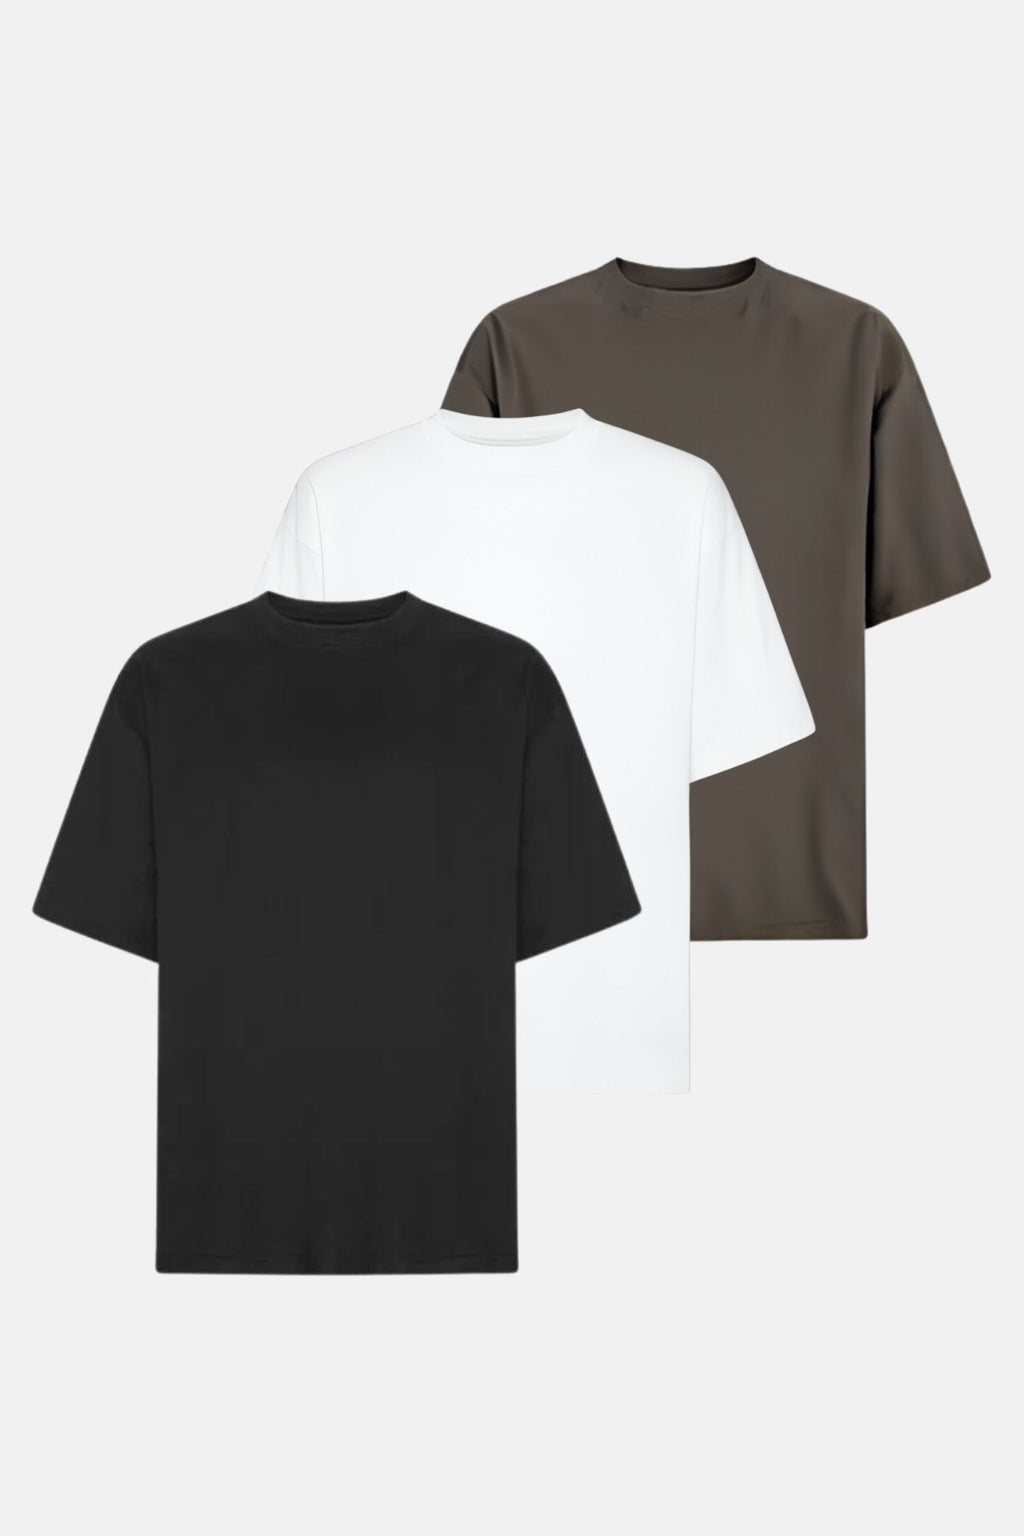 Camiseta Boxfit - Paquete (3 uds.)